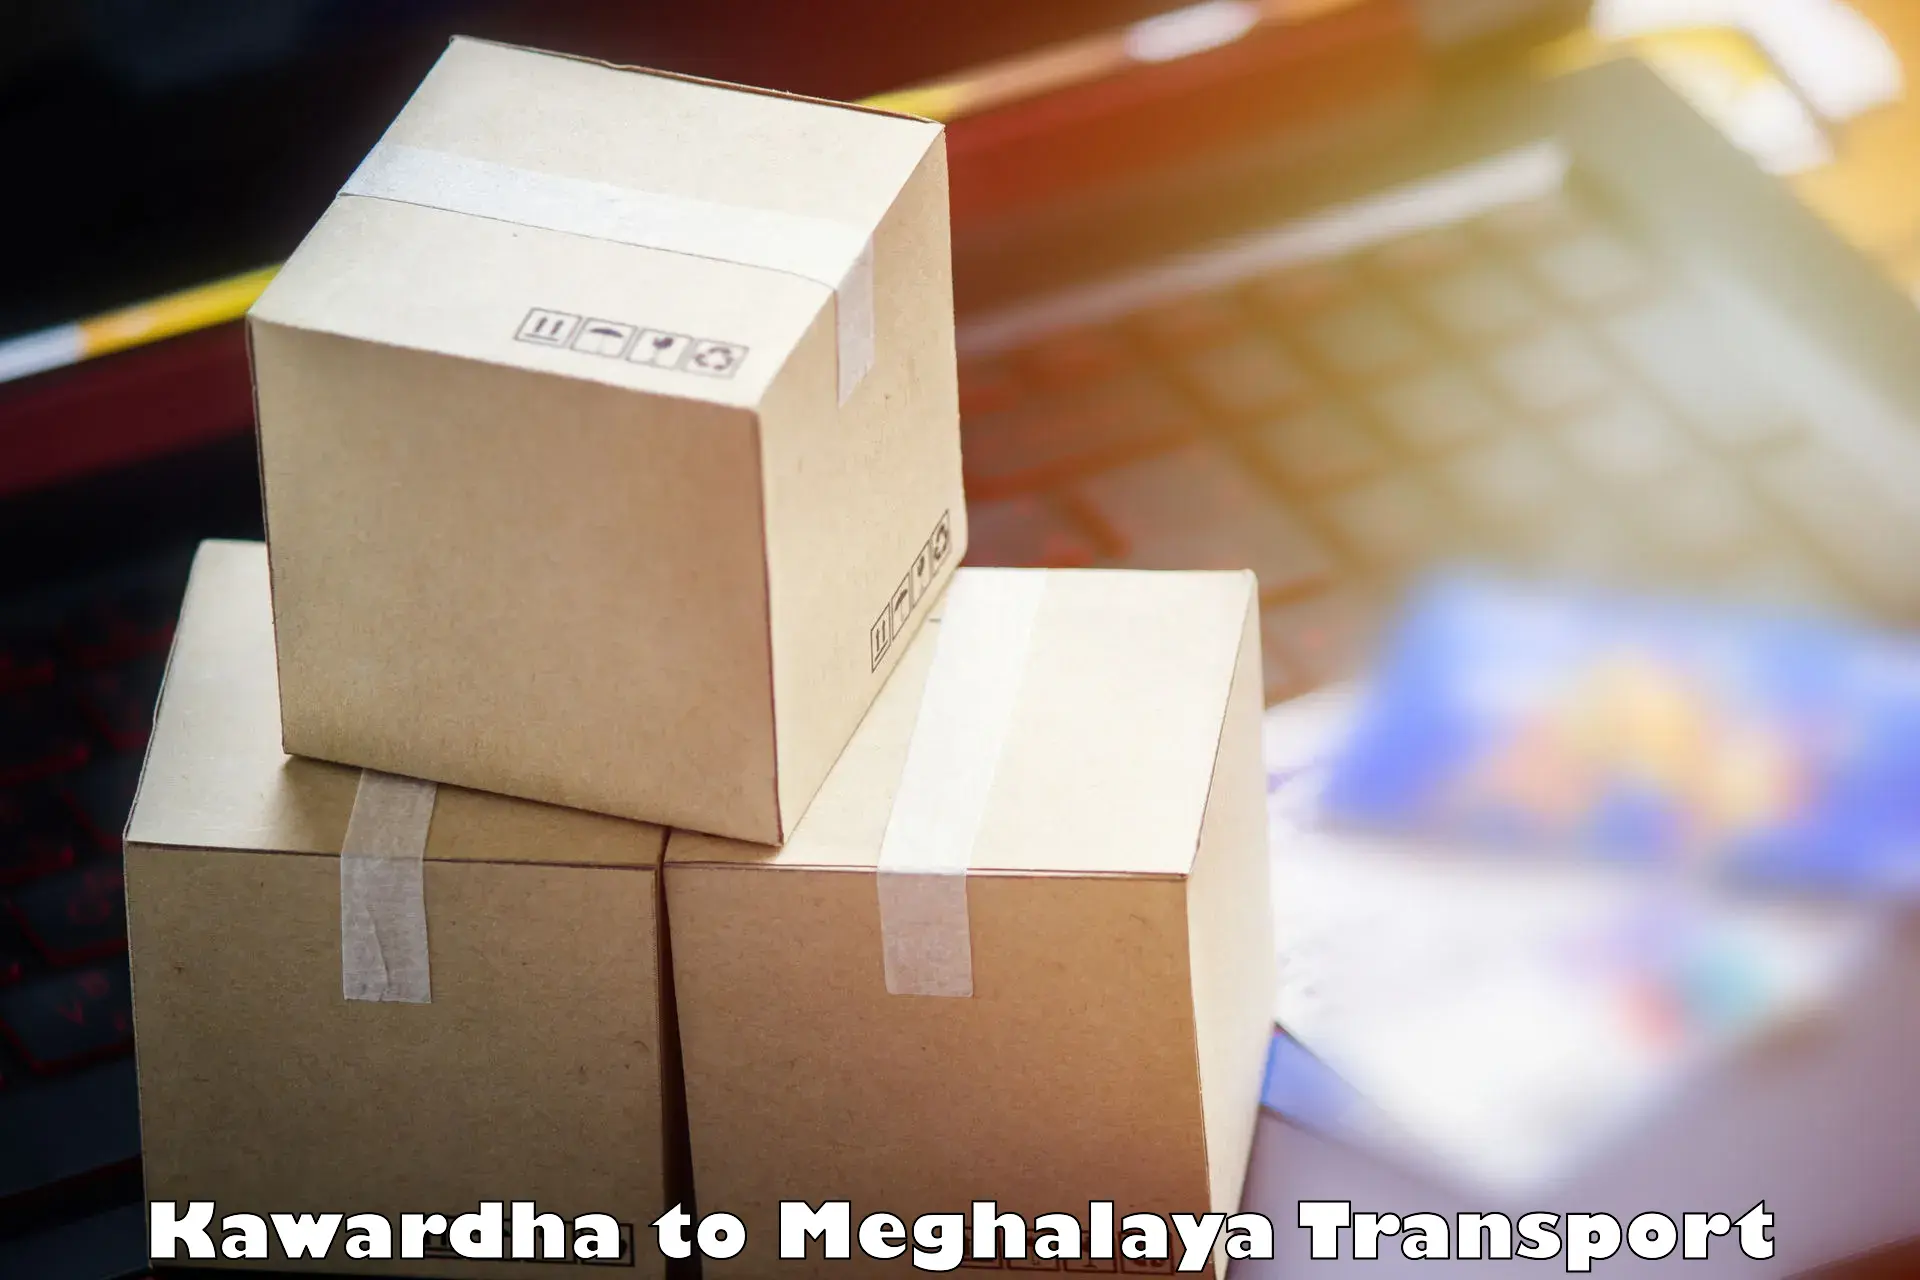 Shipping services Kawardha to Meghalaya